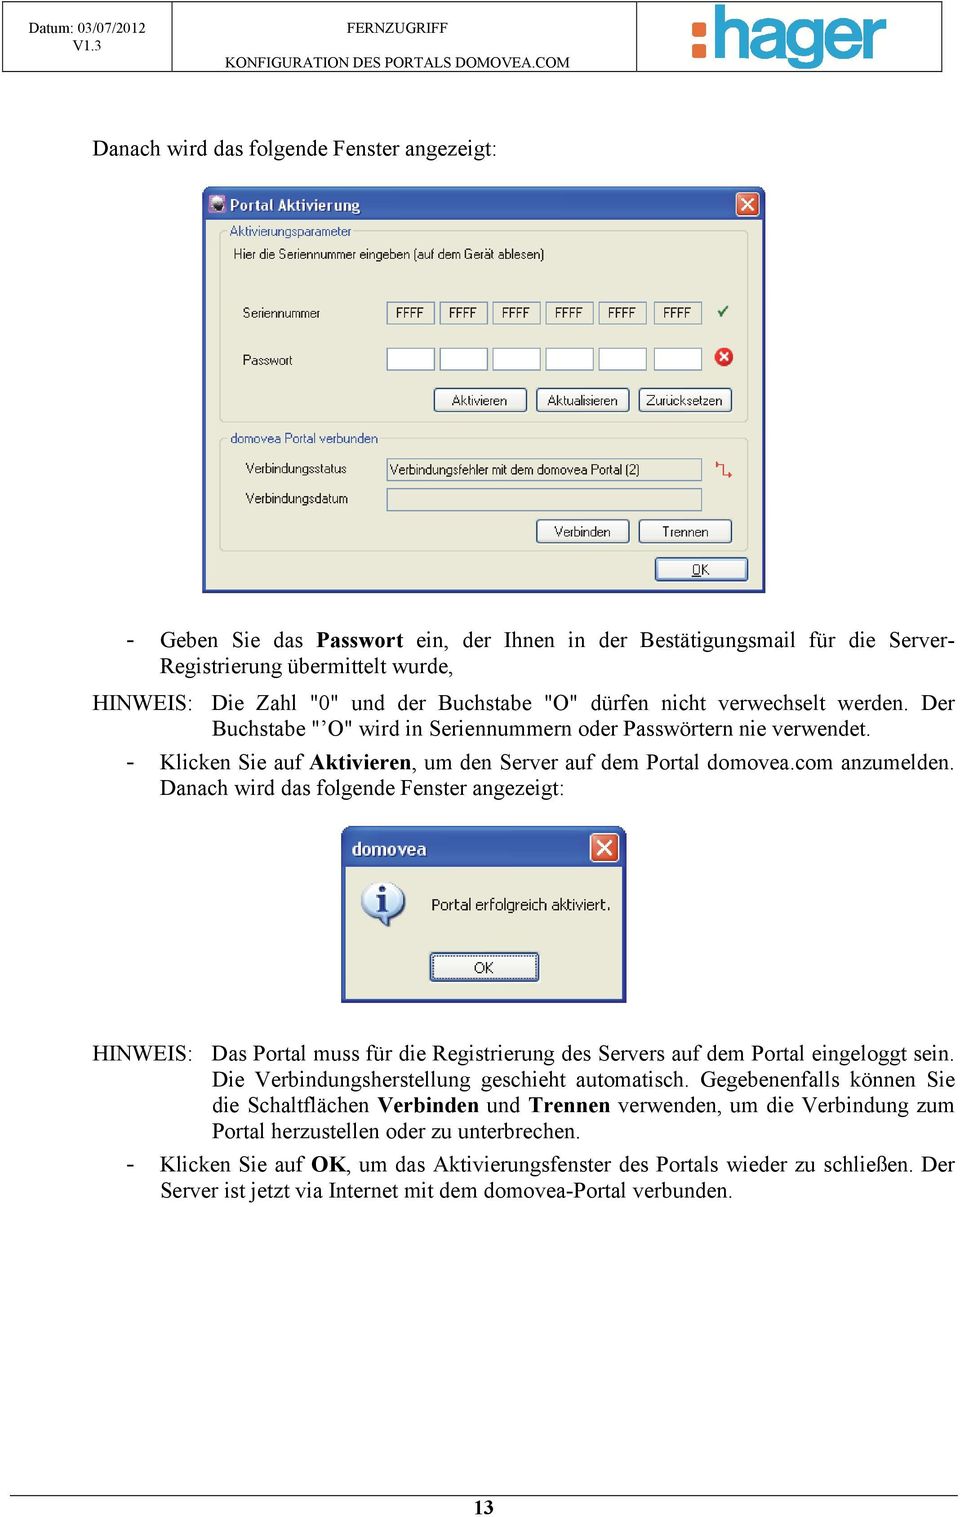 Danach wird das folgende Fenster angezeigt: HINWEIS: Das Portal muss für die Registrierung des Servers auf dem Portal eingeloggt sein. Die Verbindungsherstellung geschieht automatisch.